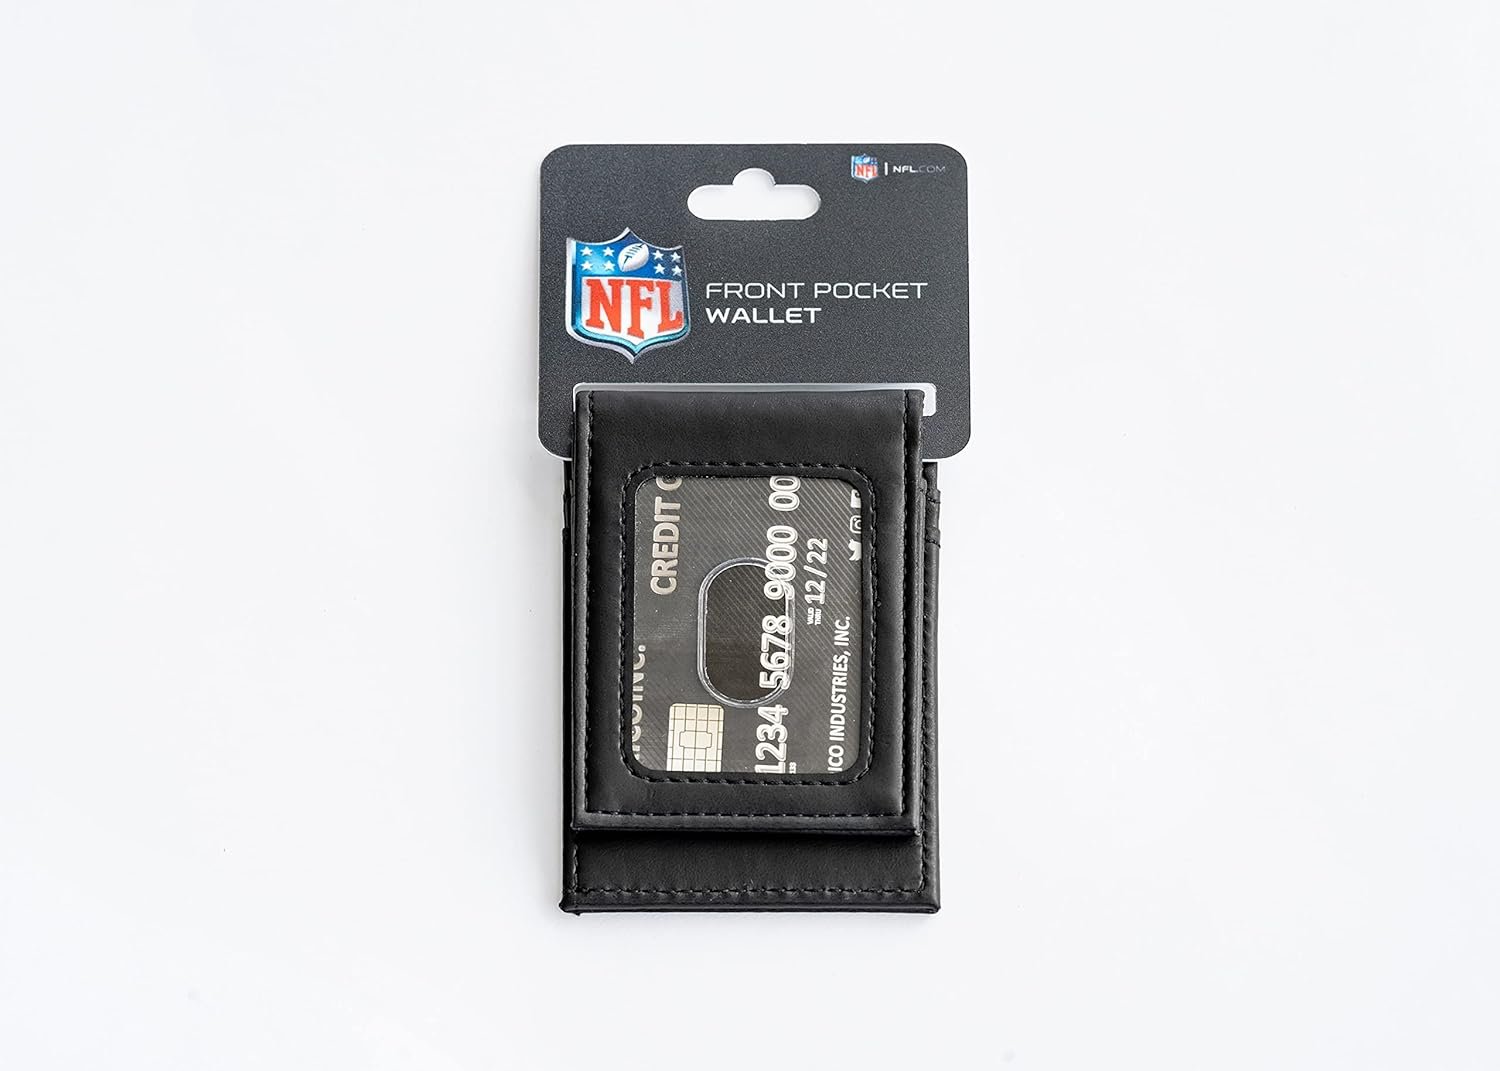 Cleveland Browns Premium Black Leather Wallet, Front Pocket Magnetic Money Clip, Laser Engraved, Vegan